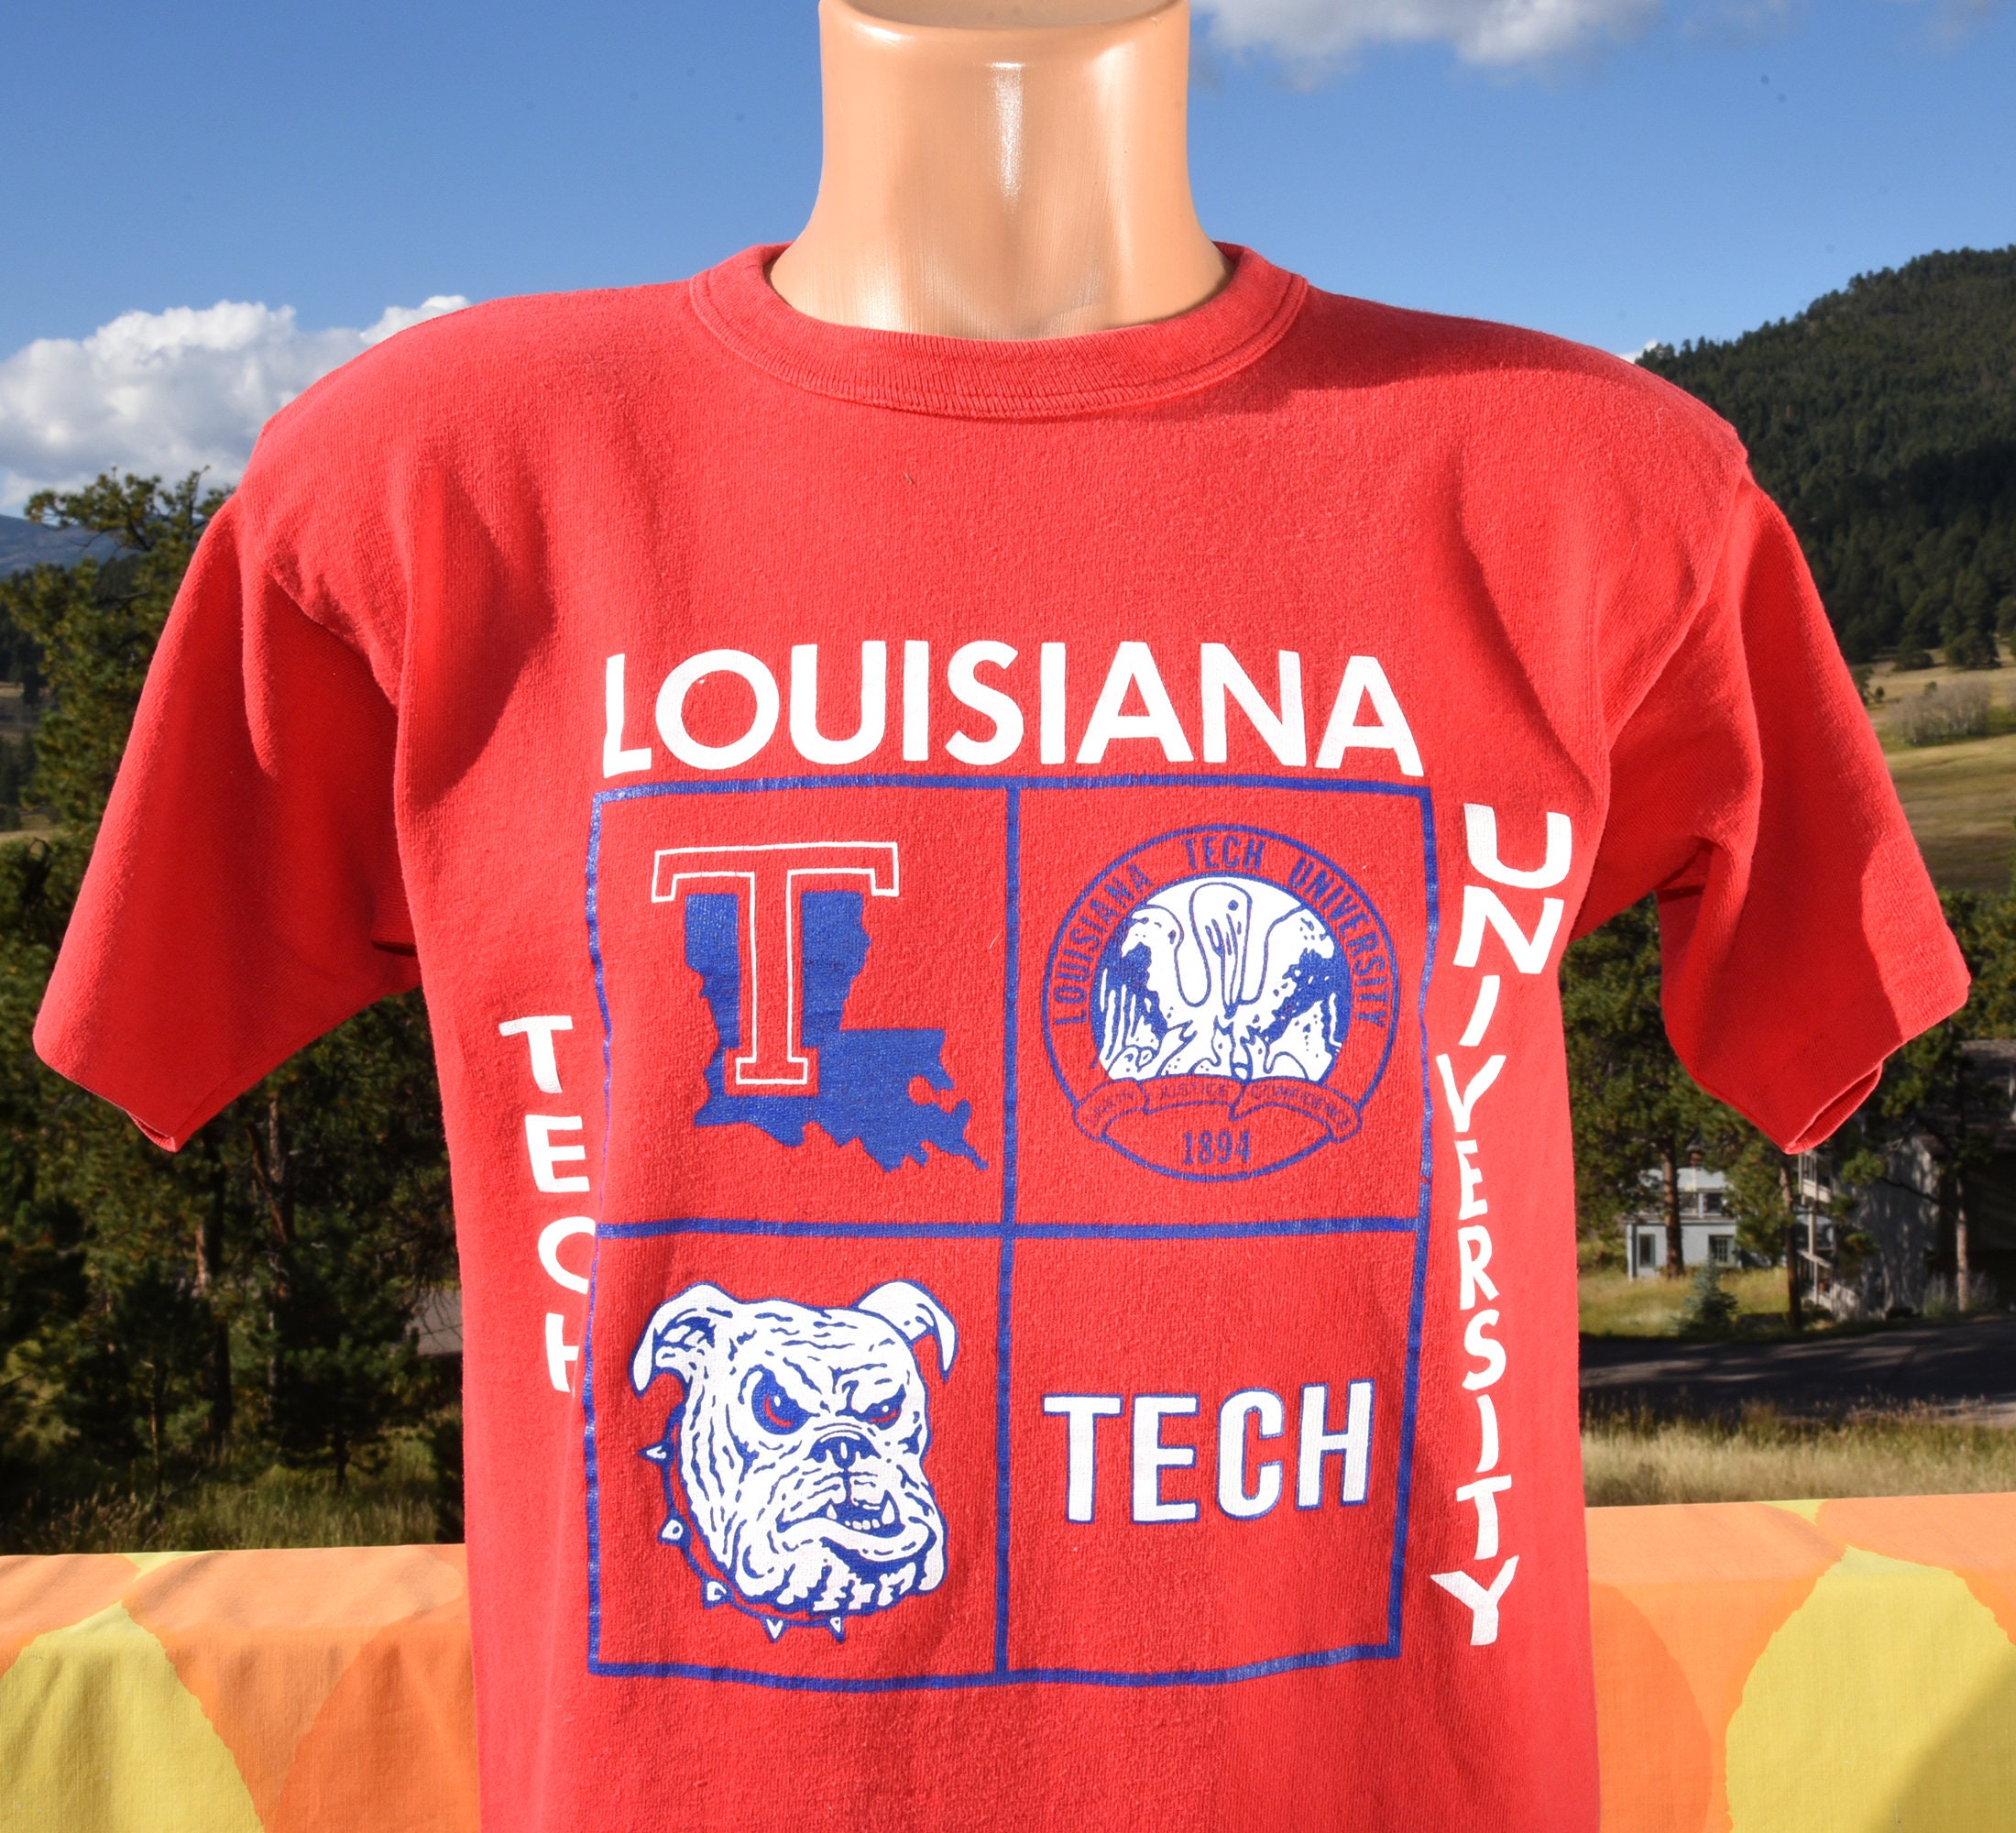 skippyhaha Vintage 80s T-Shirt Louisiana Tech University Champion Tee Large Medium Cotton